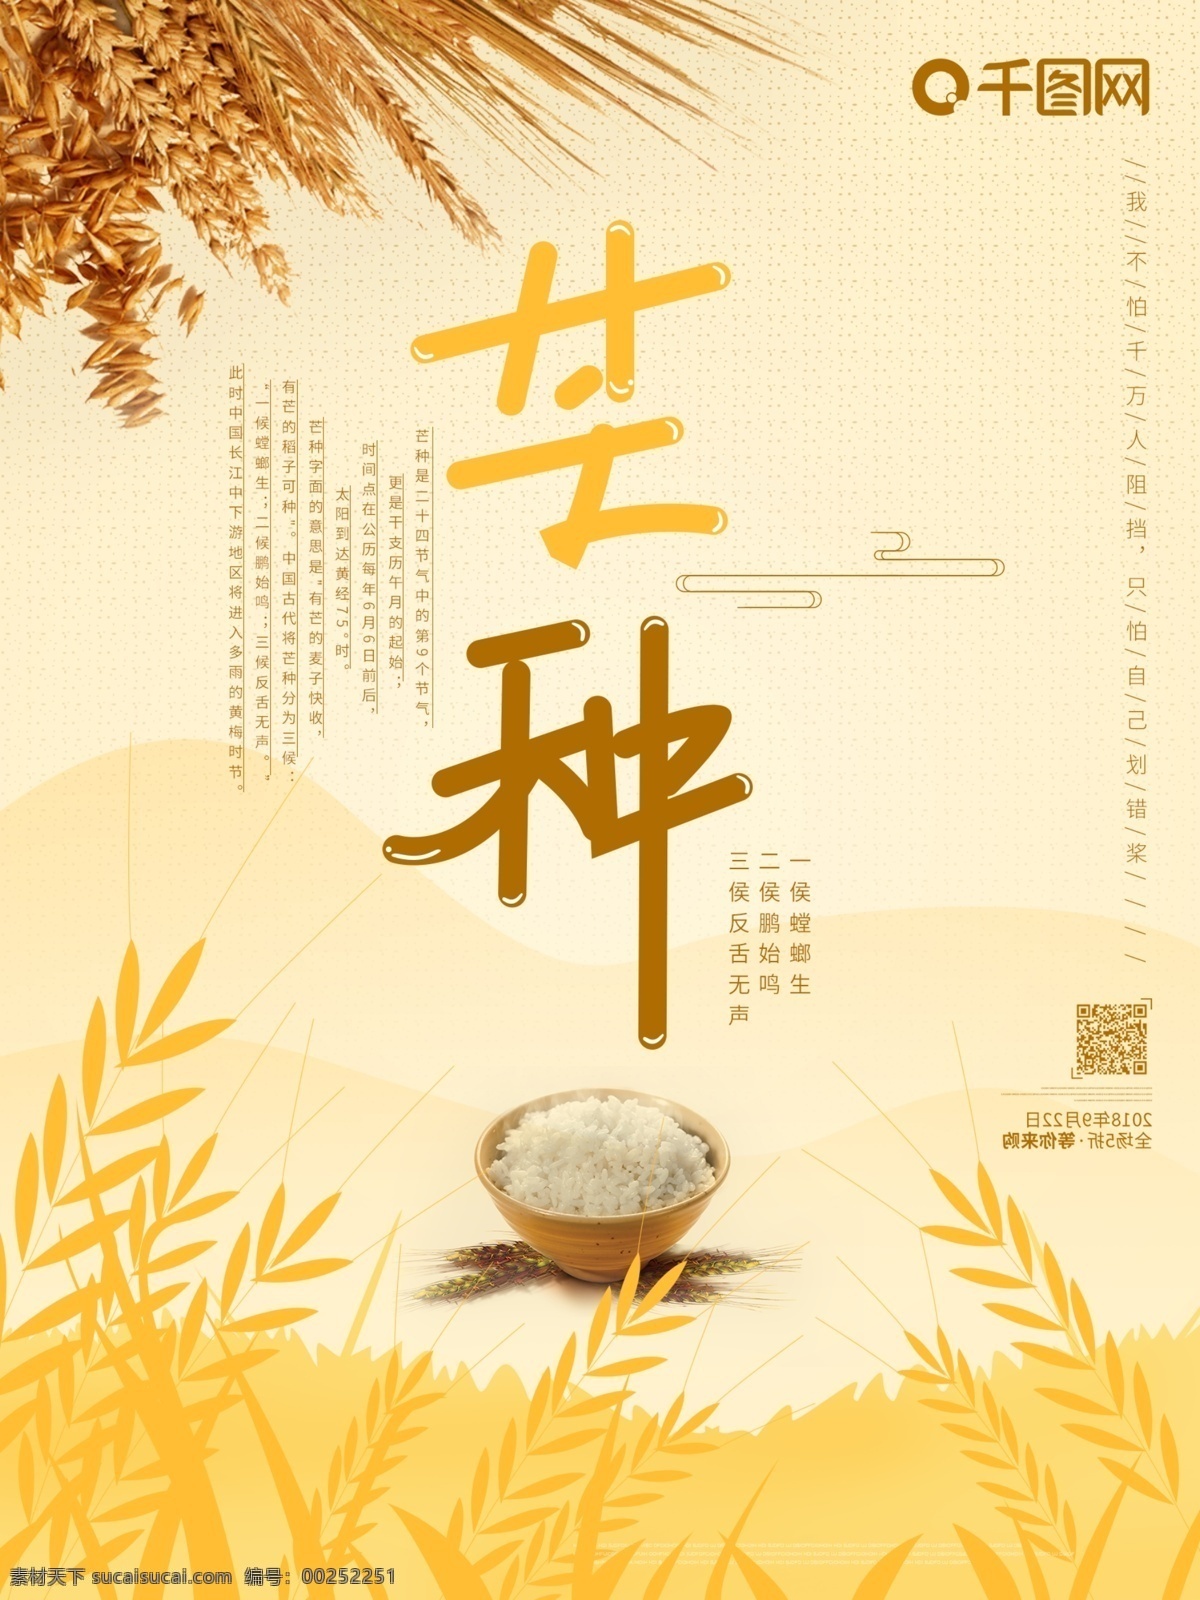 芒种 中国 传统 节气 原创 插画 大气 黄色 海报 原创插画 中国传统 节日 24节气之一 创意